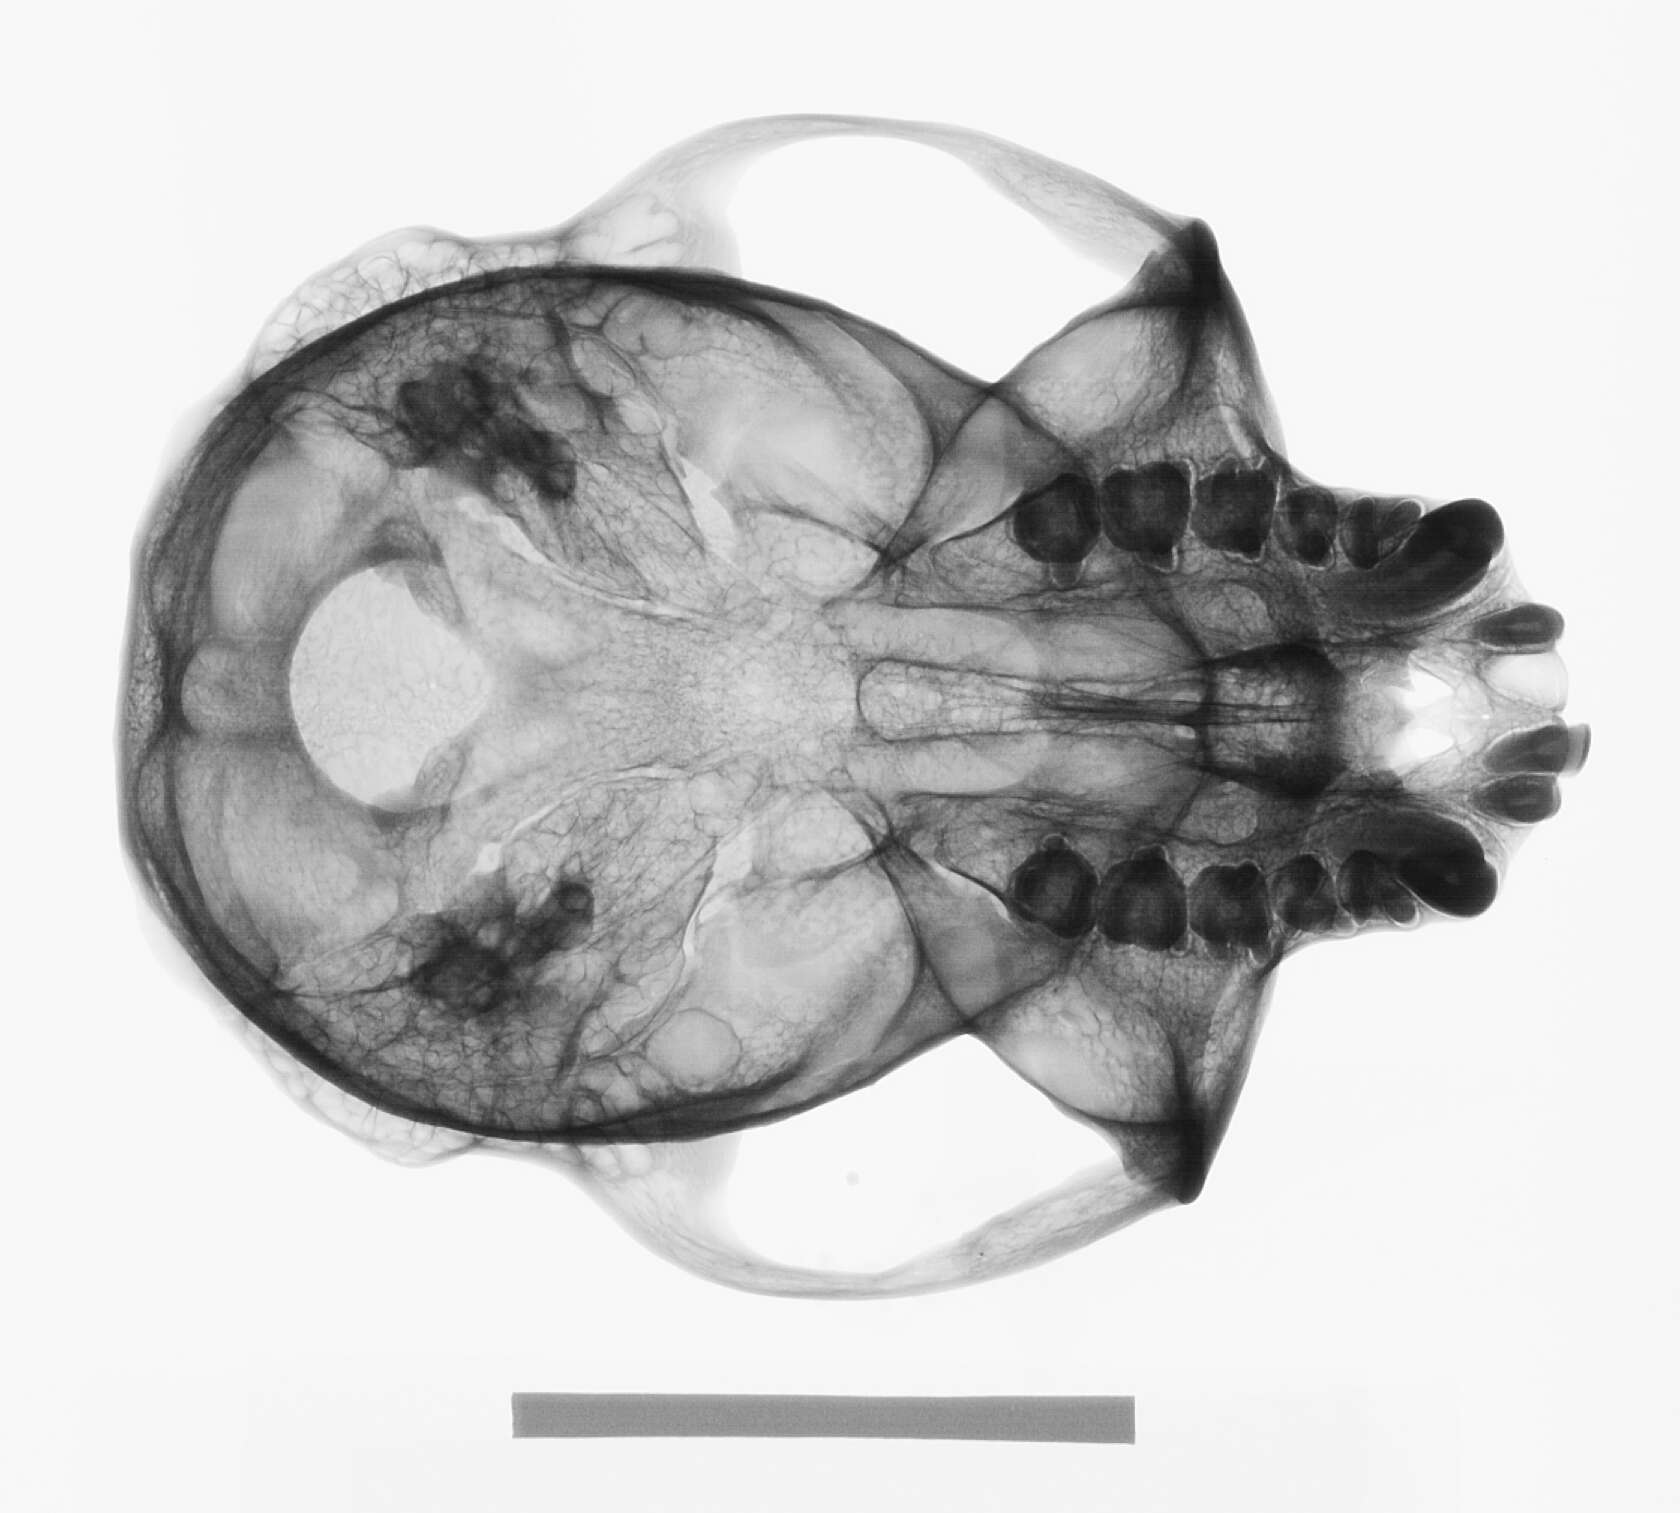 Image of Trachypithecus cristatus cristatus (Raffles 1821)